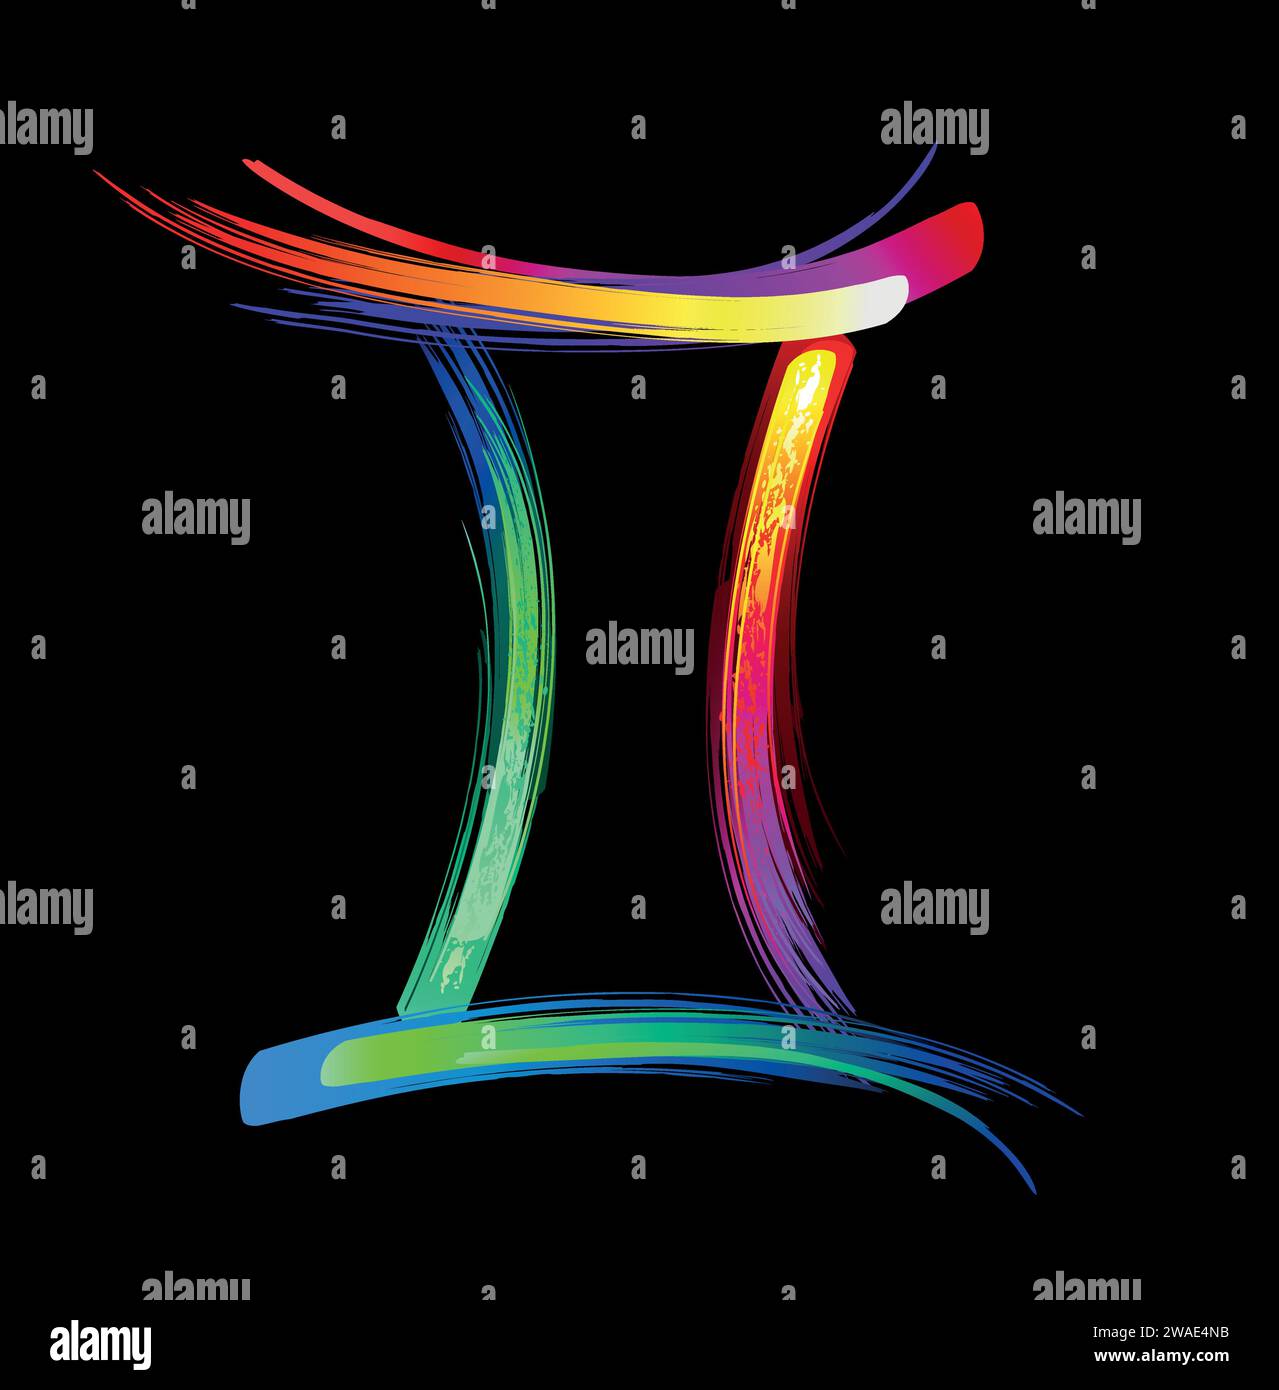 Sternzeichen Gemini, gemalt mit großen Strichen von Regenbogen, hell, mehrfarbig, leuchtend, Neonfarbe auf schwarzem Hintergrund. Zodiac-Symbol. Stock Vektor